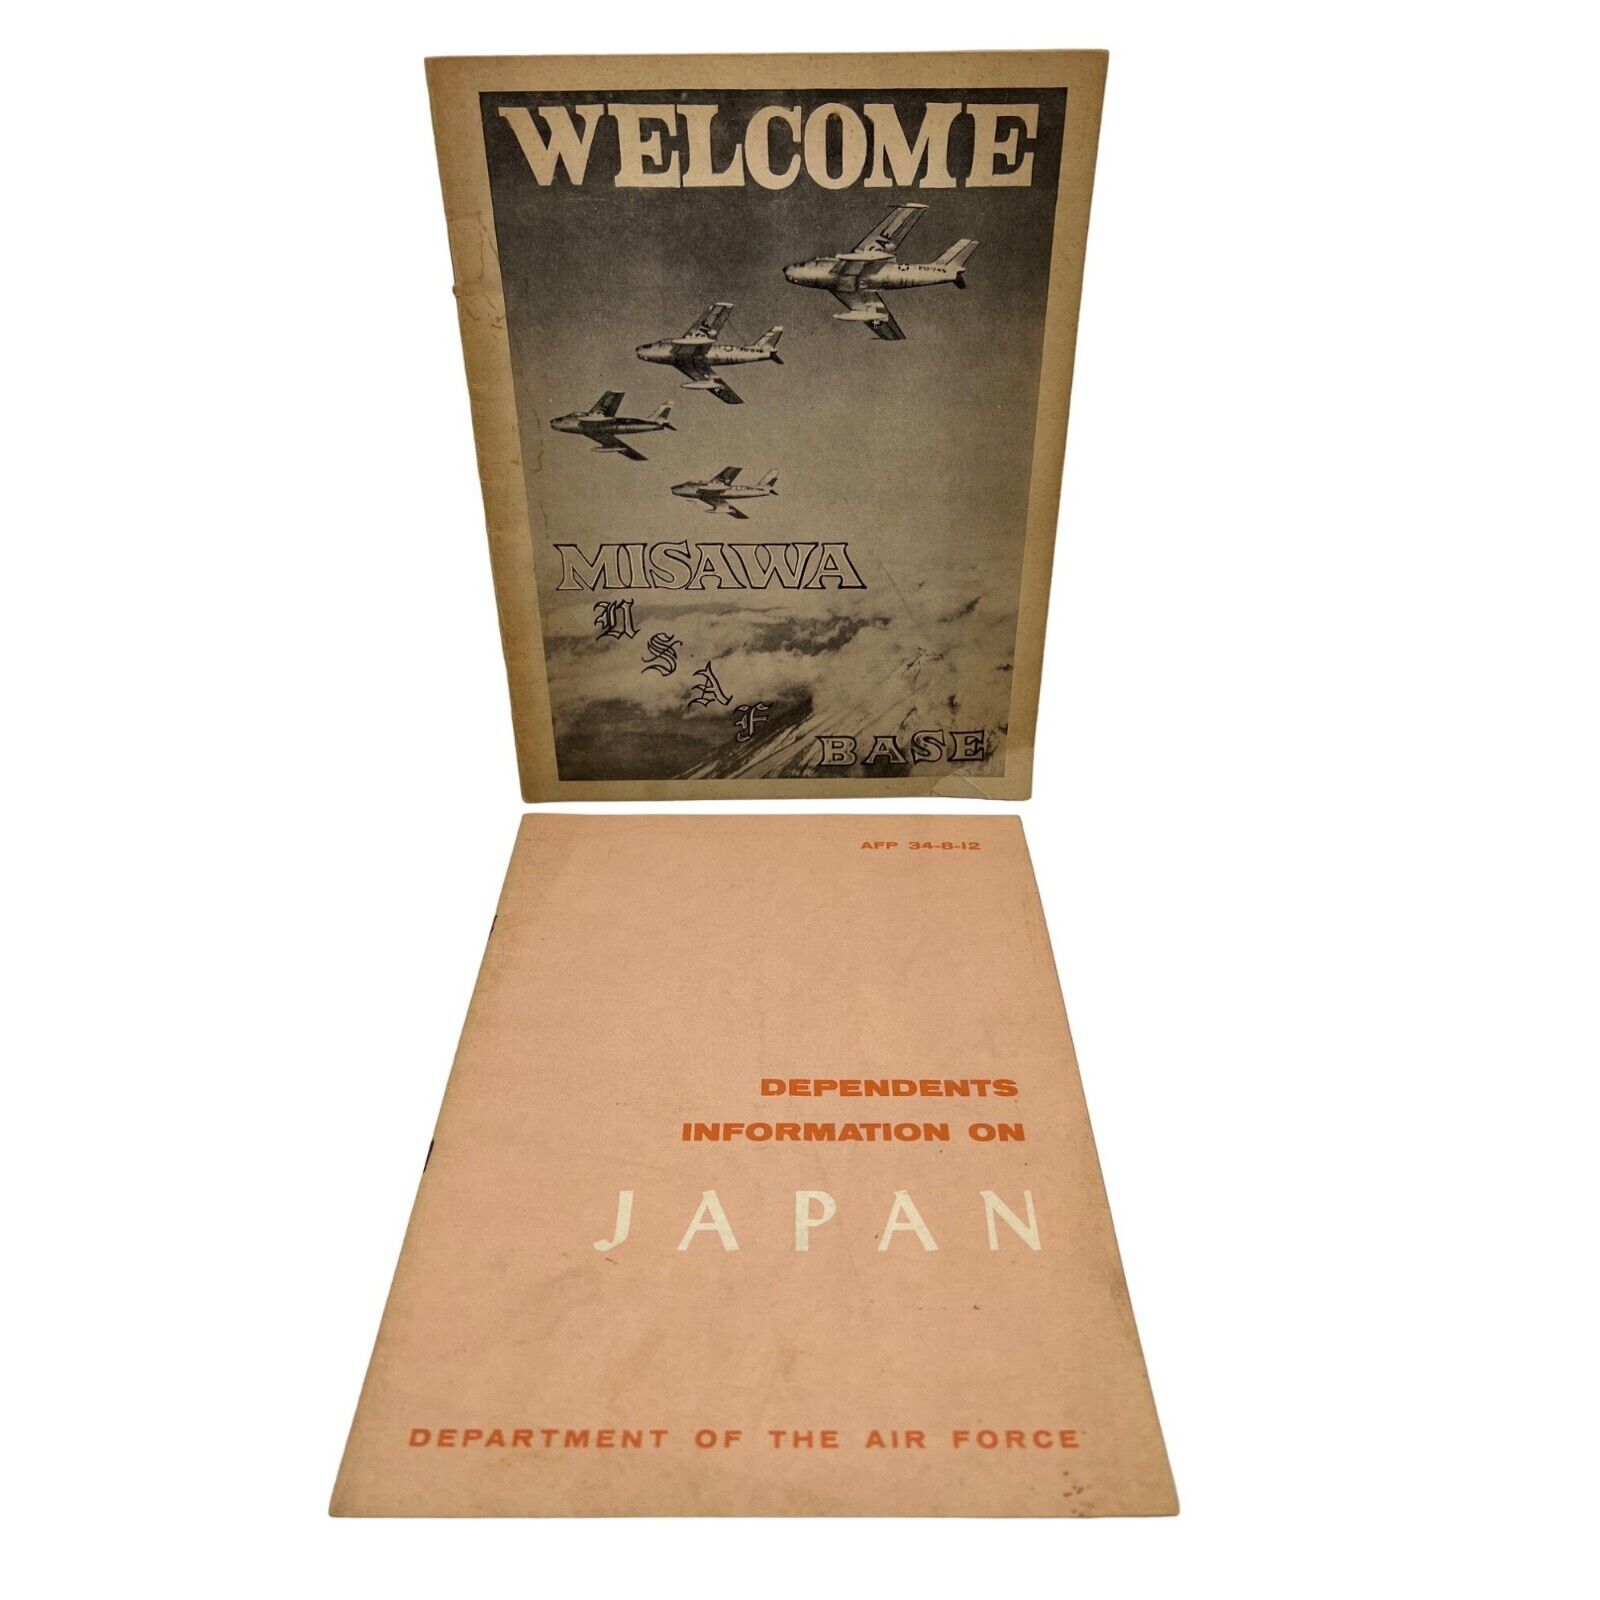 1950s US Air Force Japan Booklets Postcard & Letter Misawa USAF Base Dependents